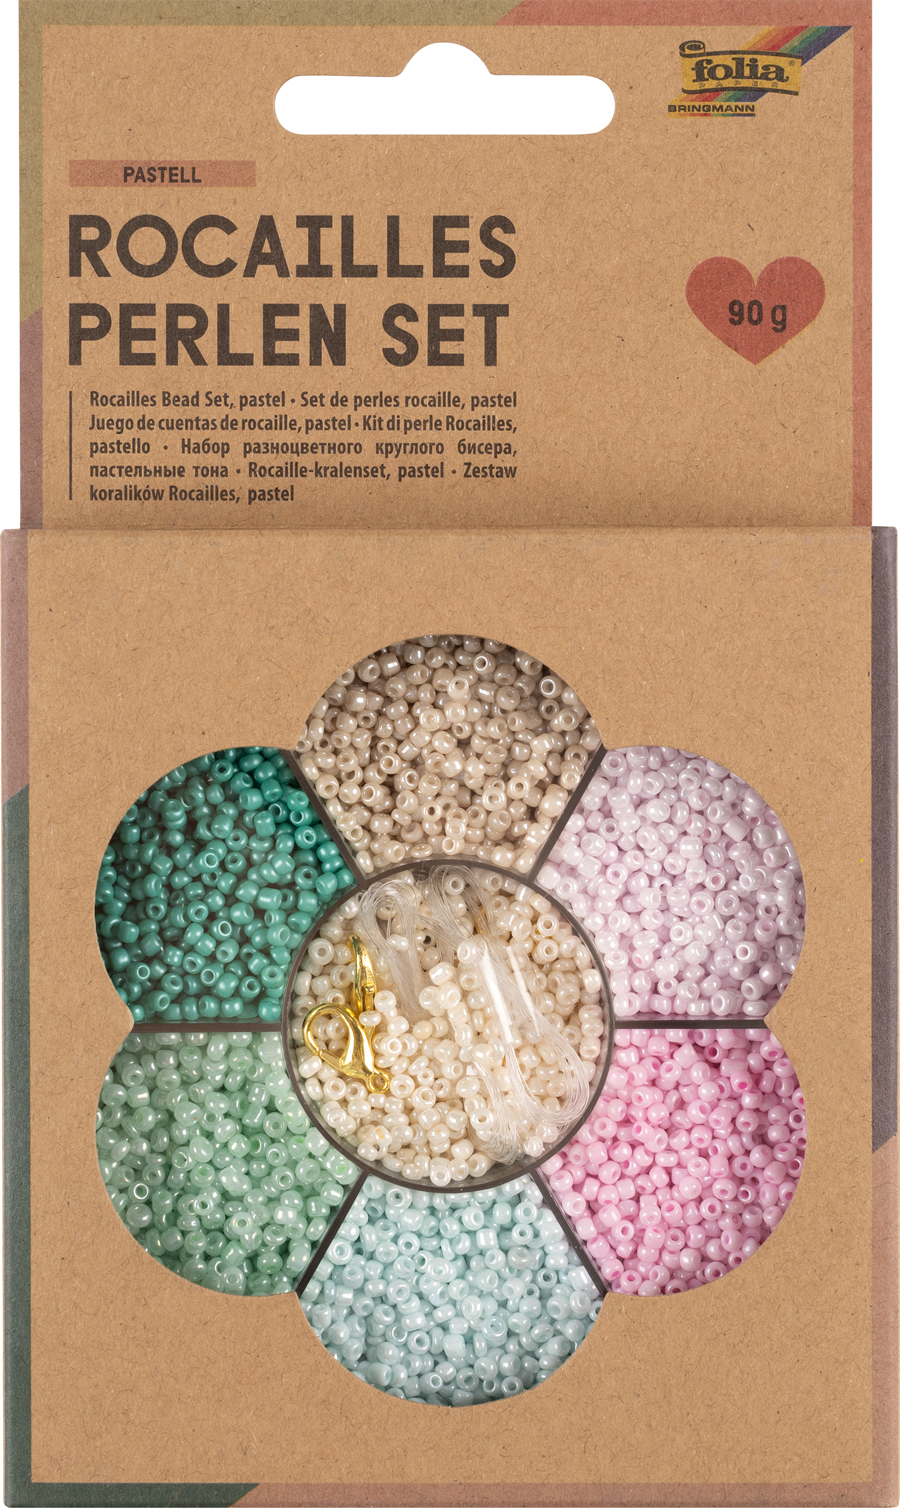 FOLIA Rocailles Perlen-Set 90g inkl. Nylonfaden und Verschlüsse pastell